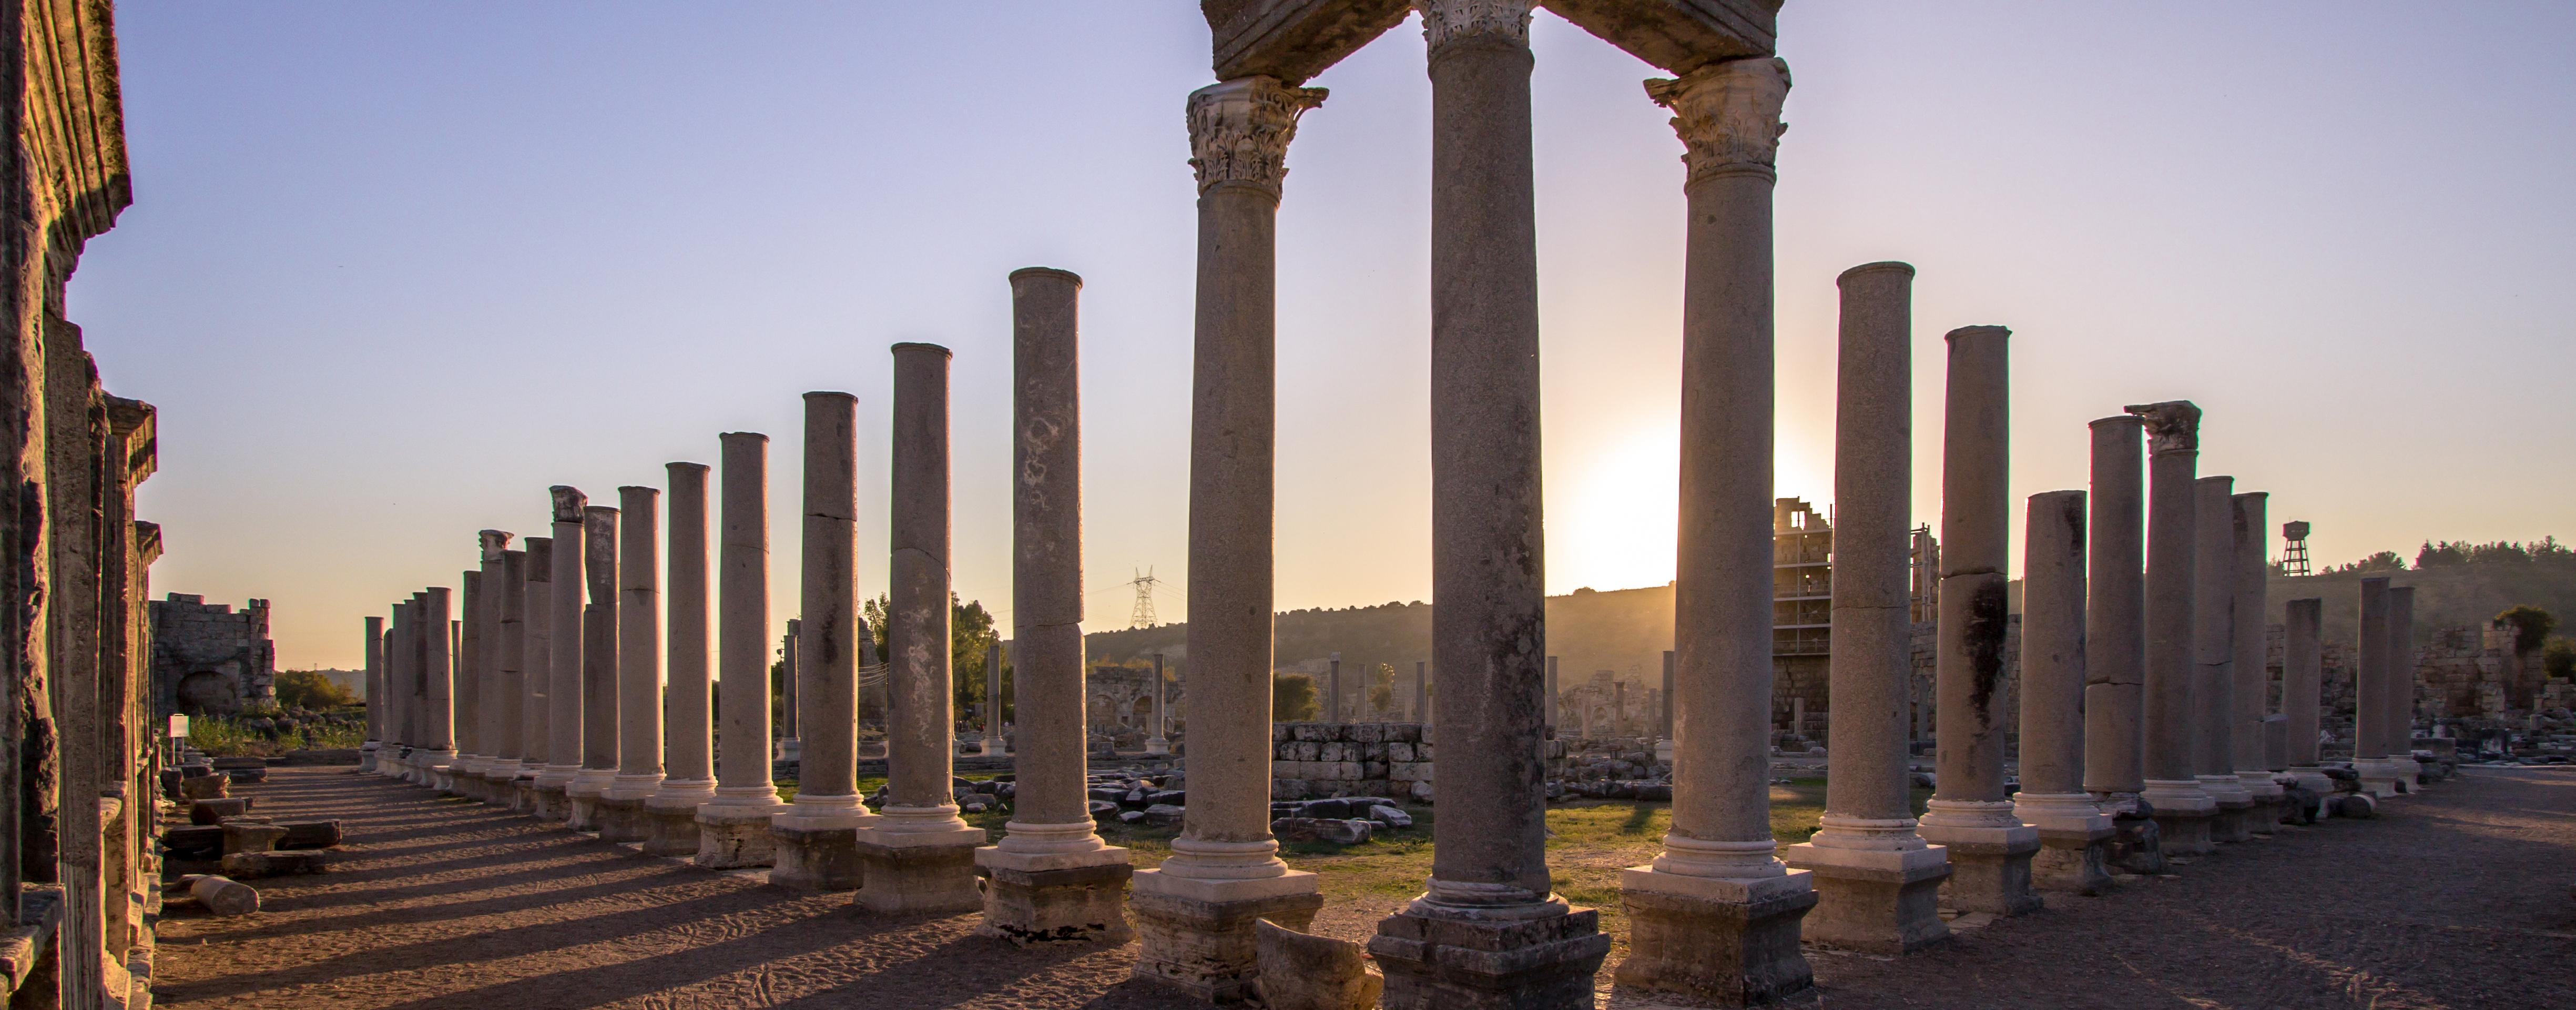 Visita guiada del sitio arqueológico de Pompeya – Salida desde Nápoles